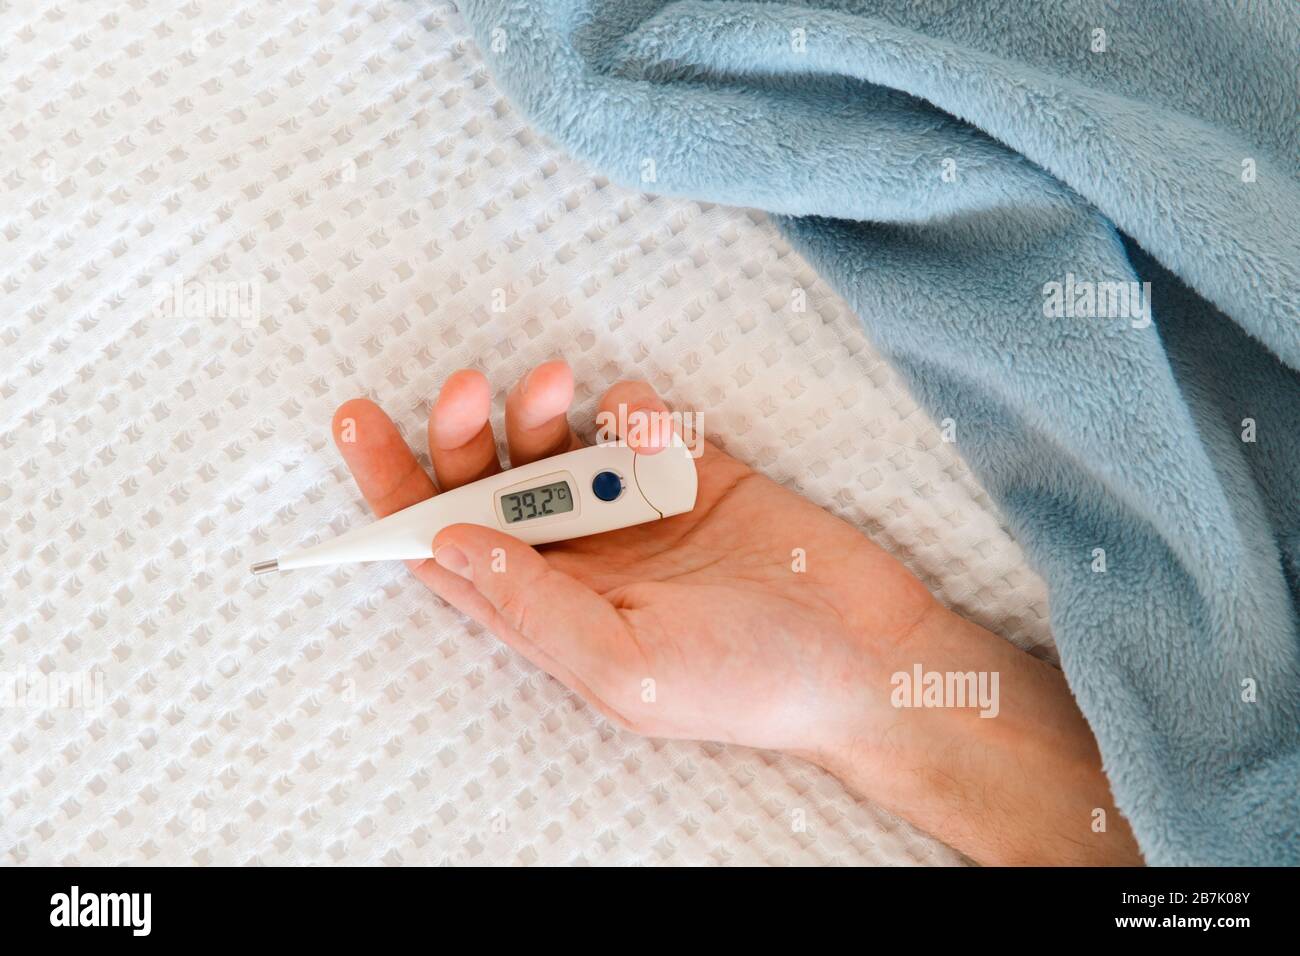 Nahaufnahme der Hand des Menschen, die ein digitales Thermometer hält, das auf dem Bett liegt, im Innenbereich. Hohes Konzept für Körpertemperatur, Kälte und Grippeepidemie Stockfoto